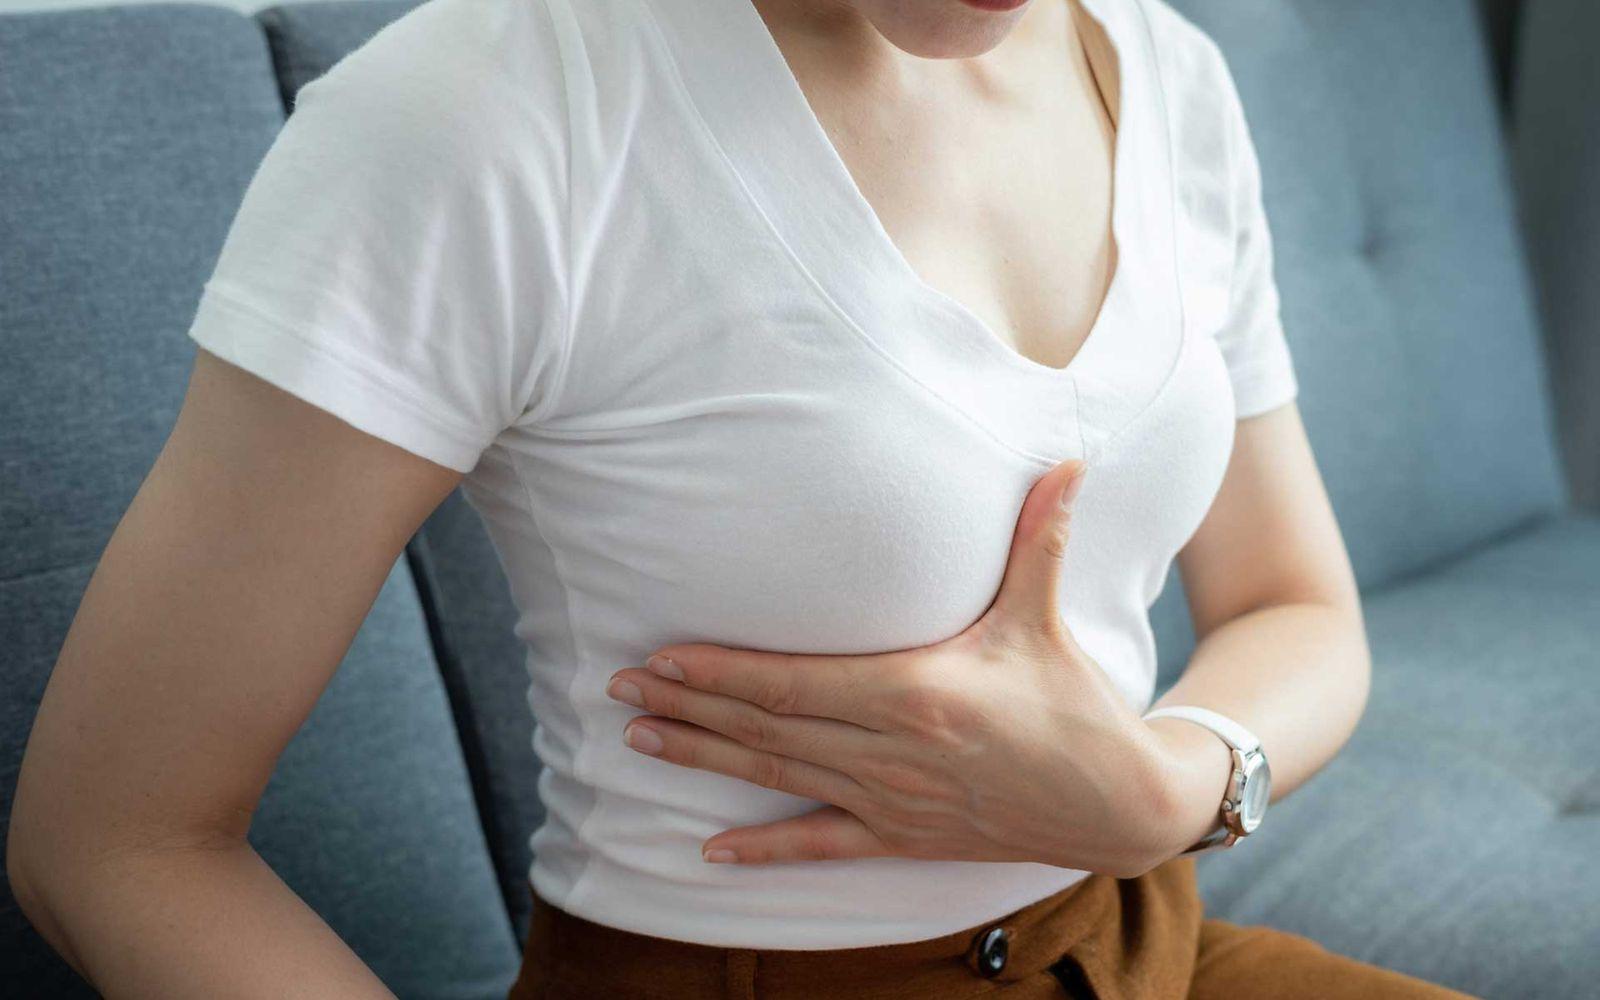 Symbolbild Brustkrebs-OP: Frau tastest ihre Brust ab